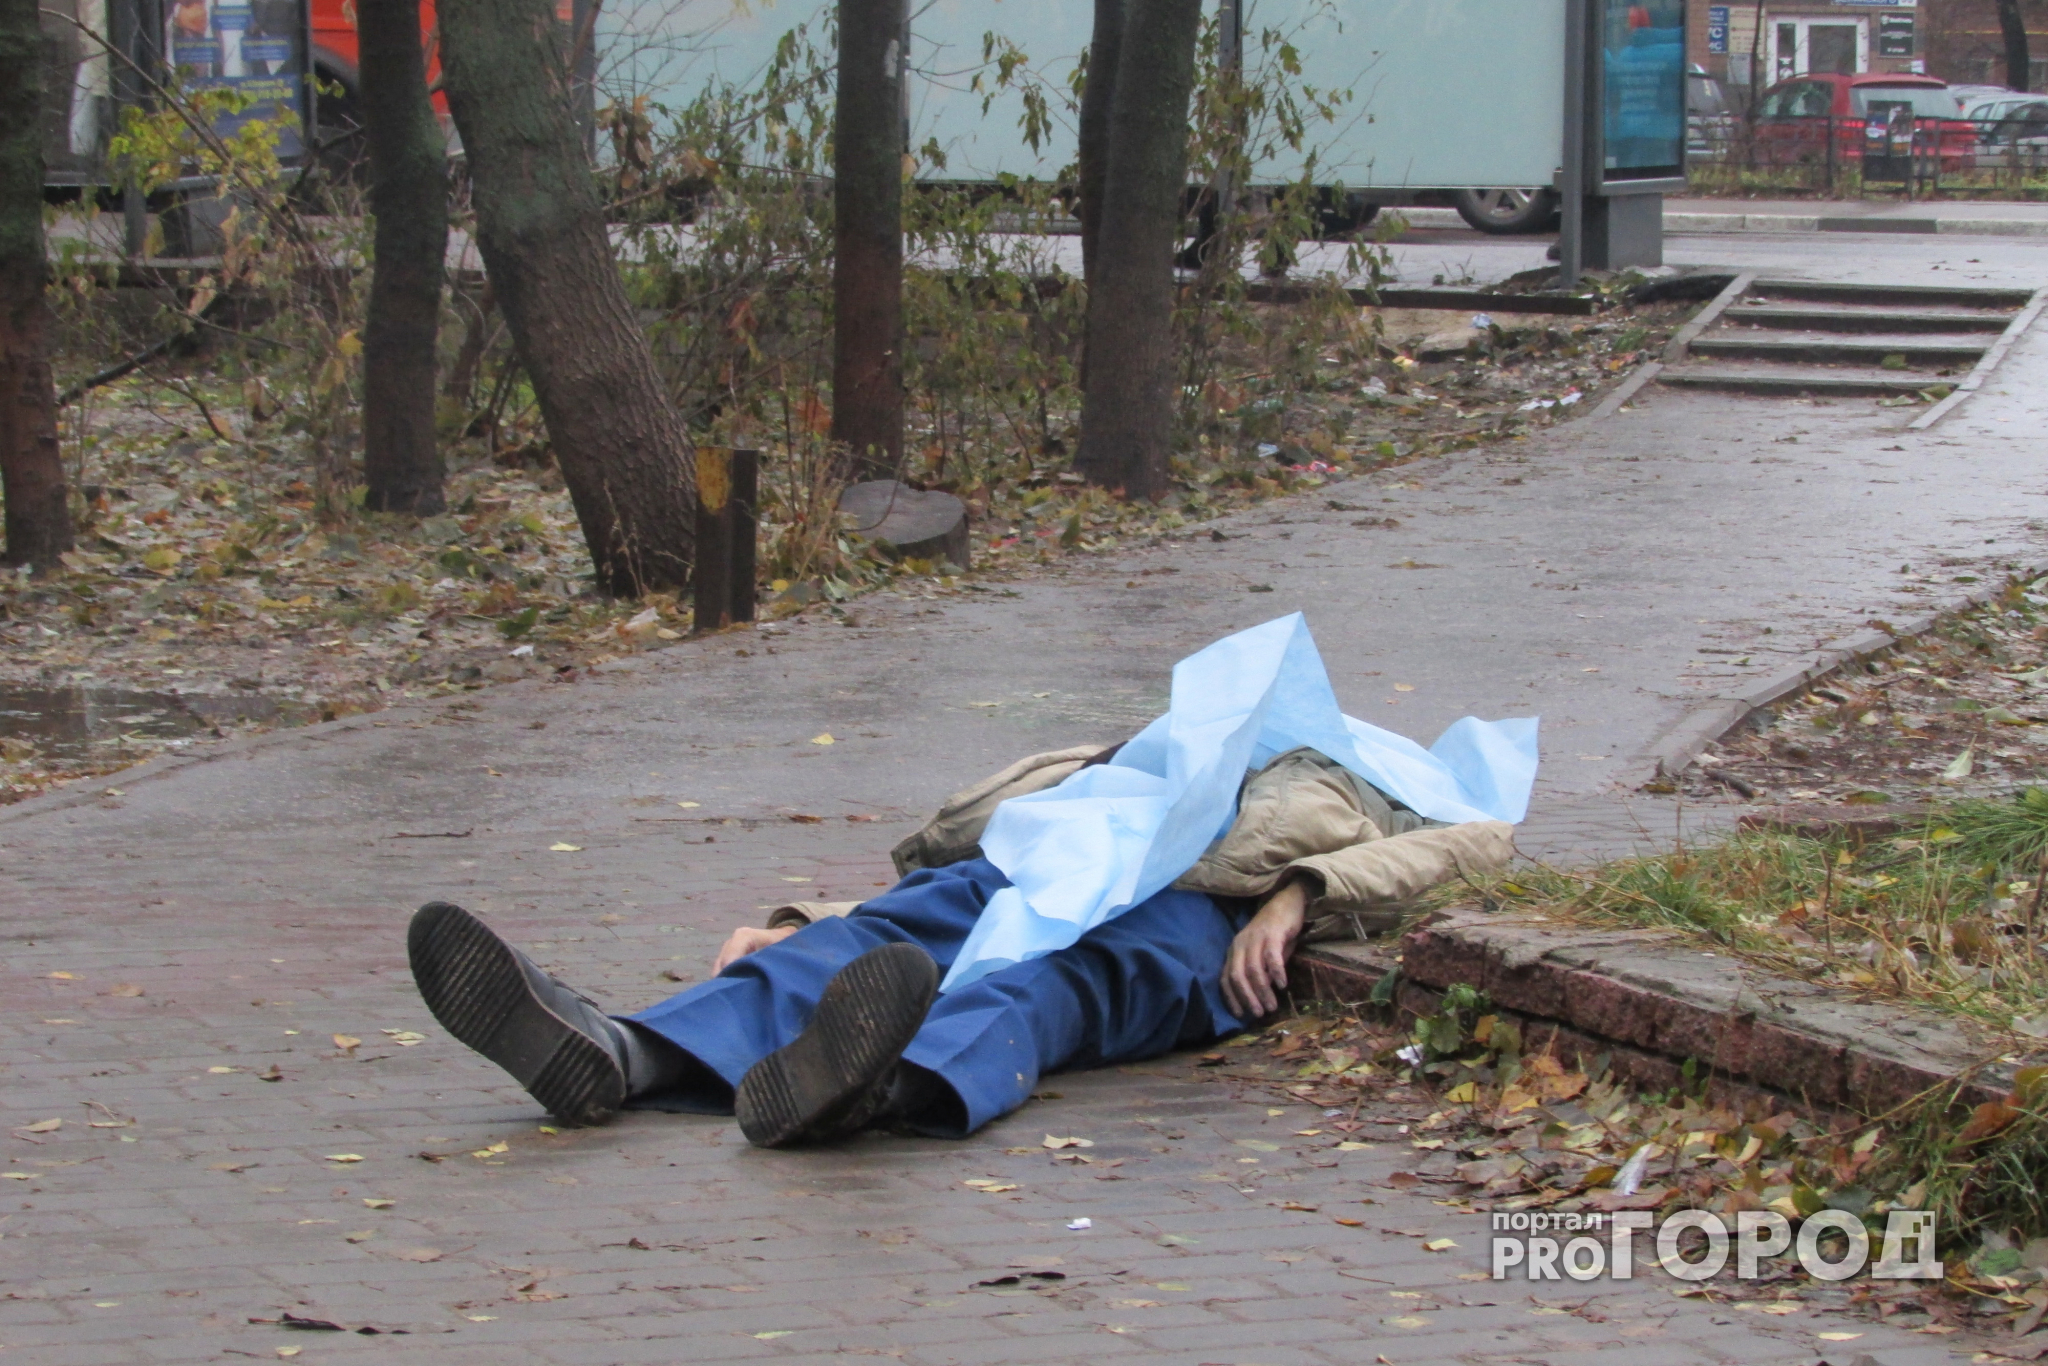 Жители Владимира стали свидетелями смерти мужчины на улице в Добром